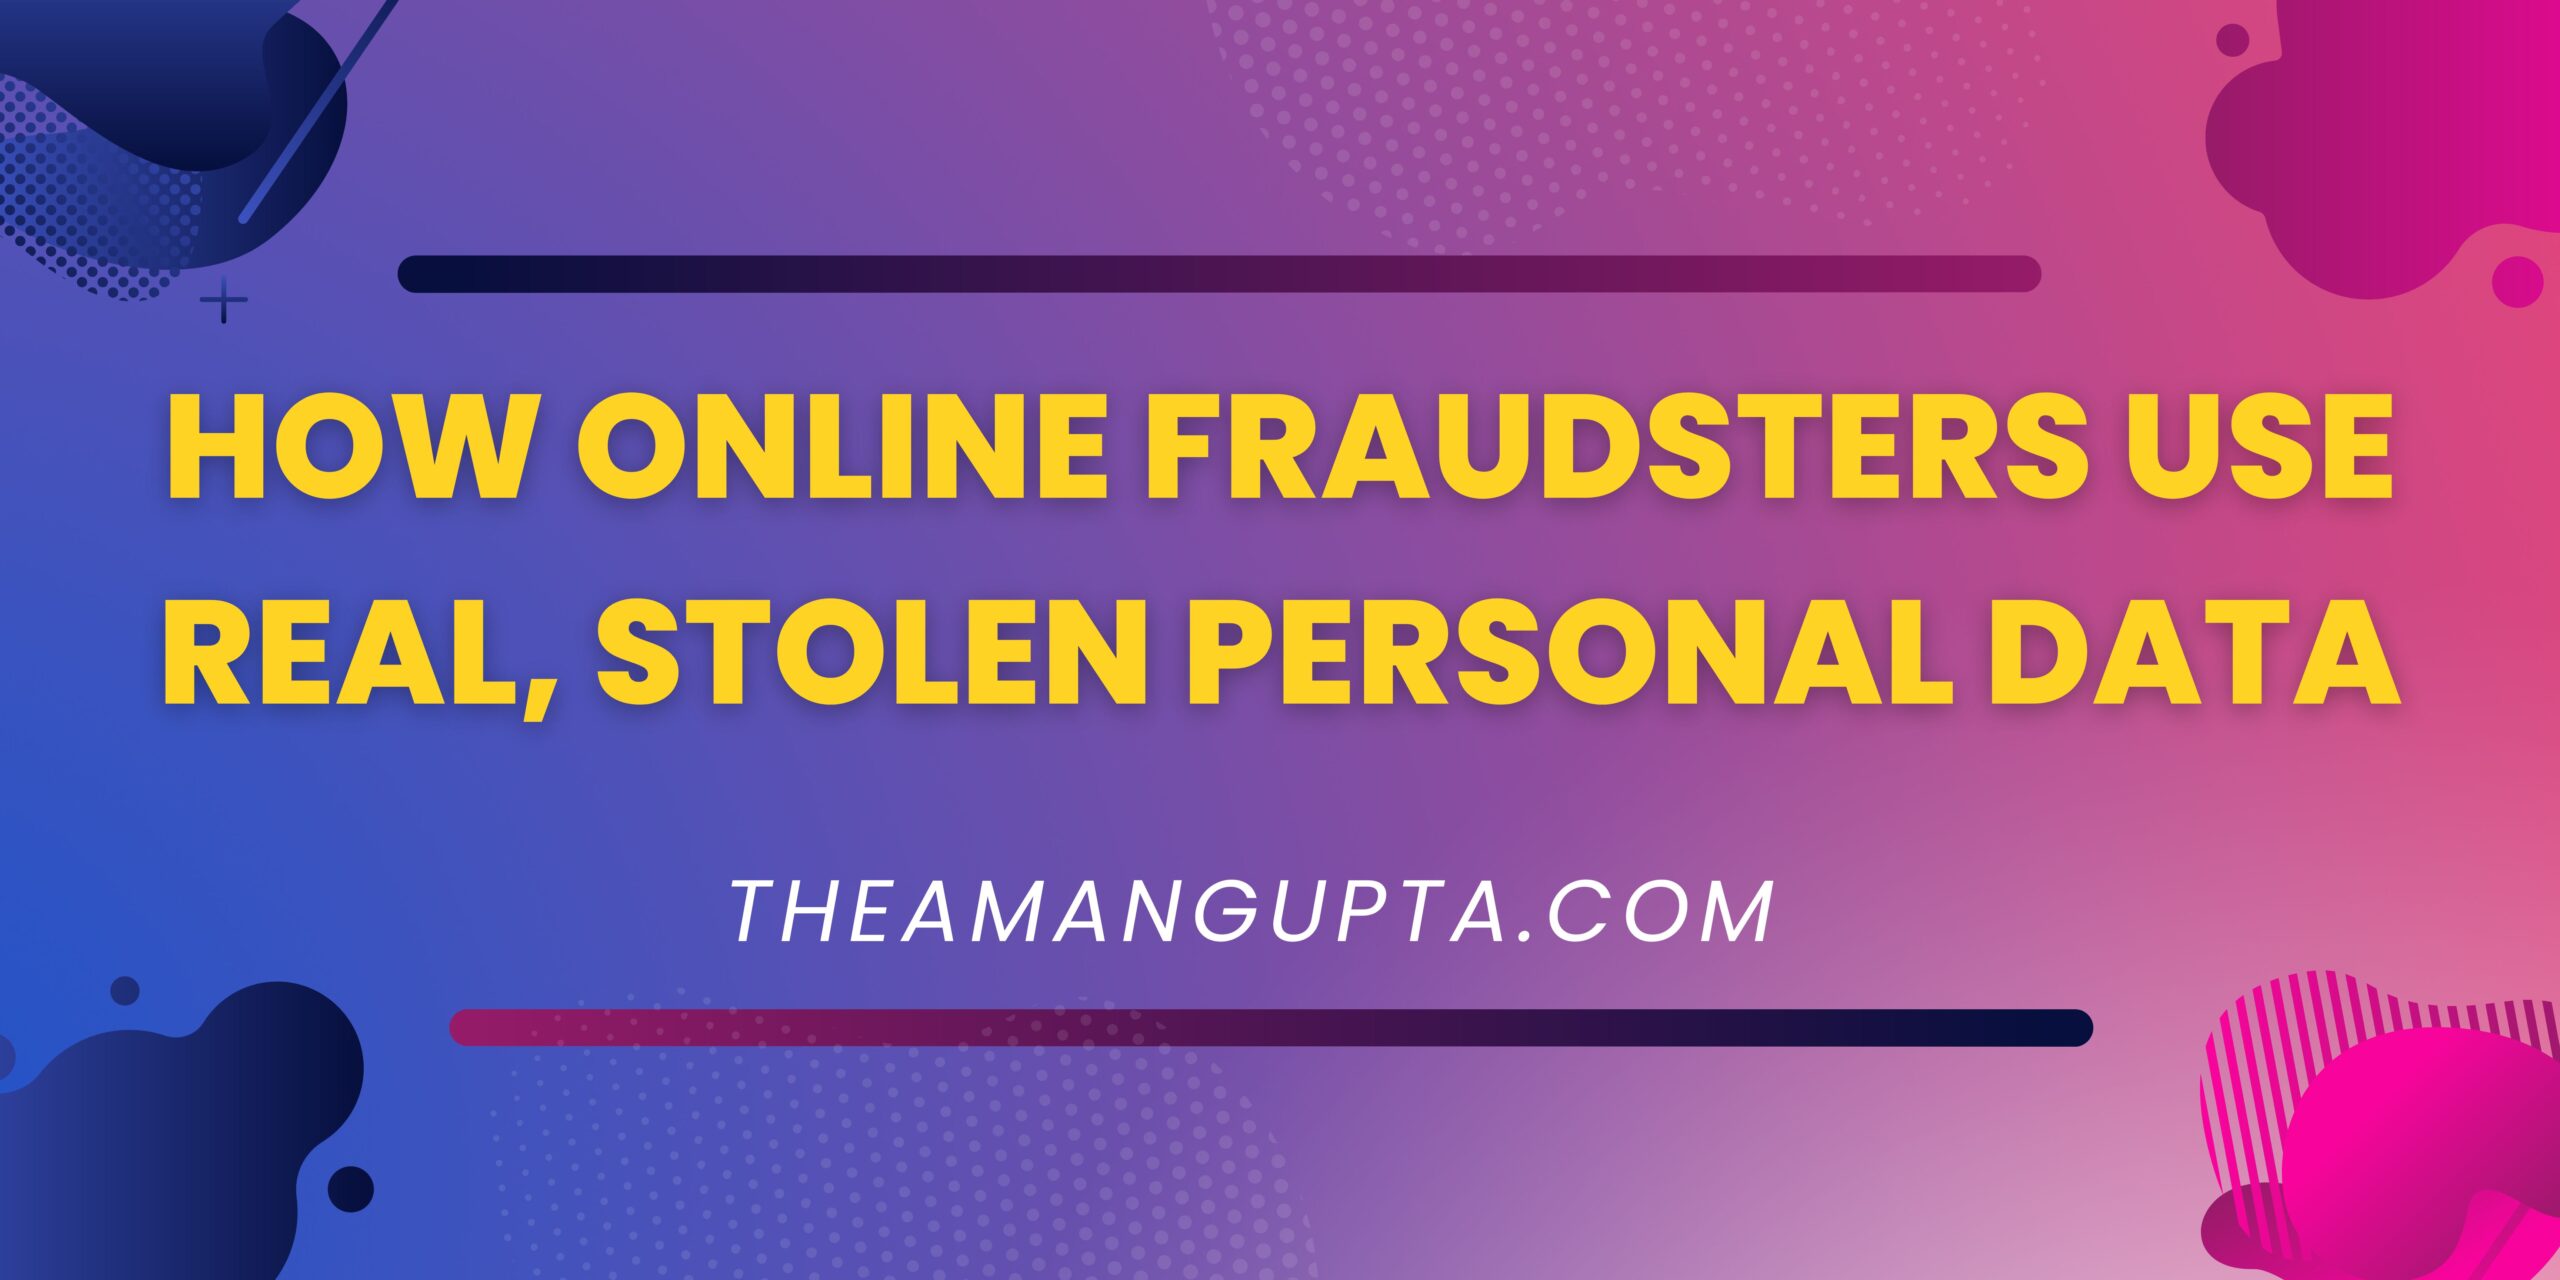 How Online Fraudsters Use Real|online Fraudsters|Theamangupta|Theamangupta